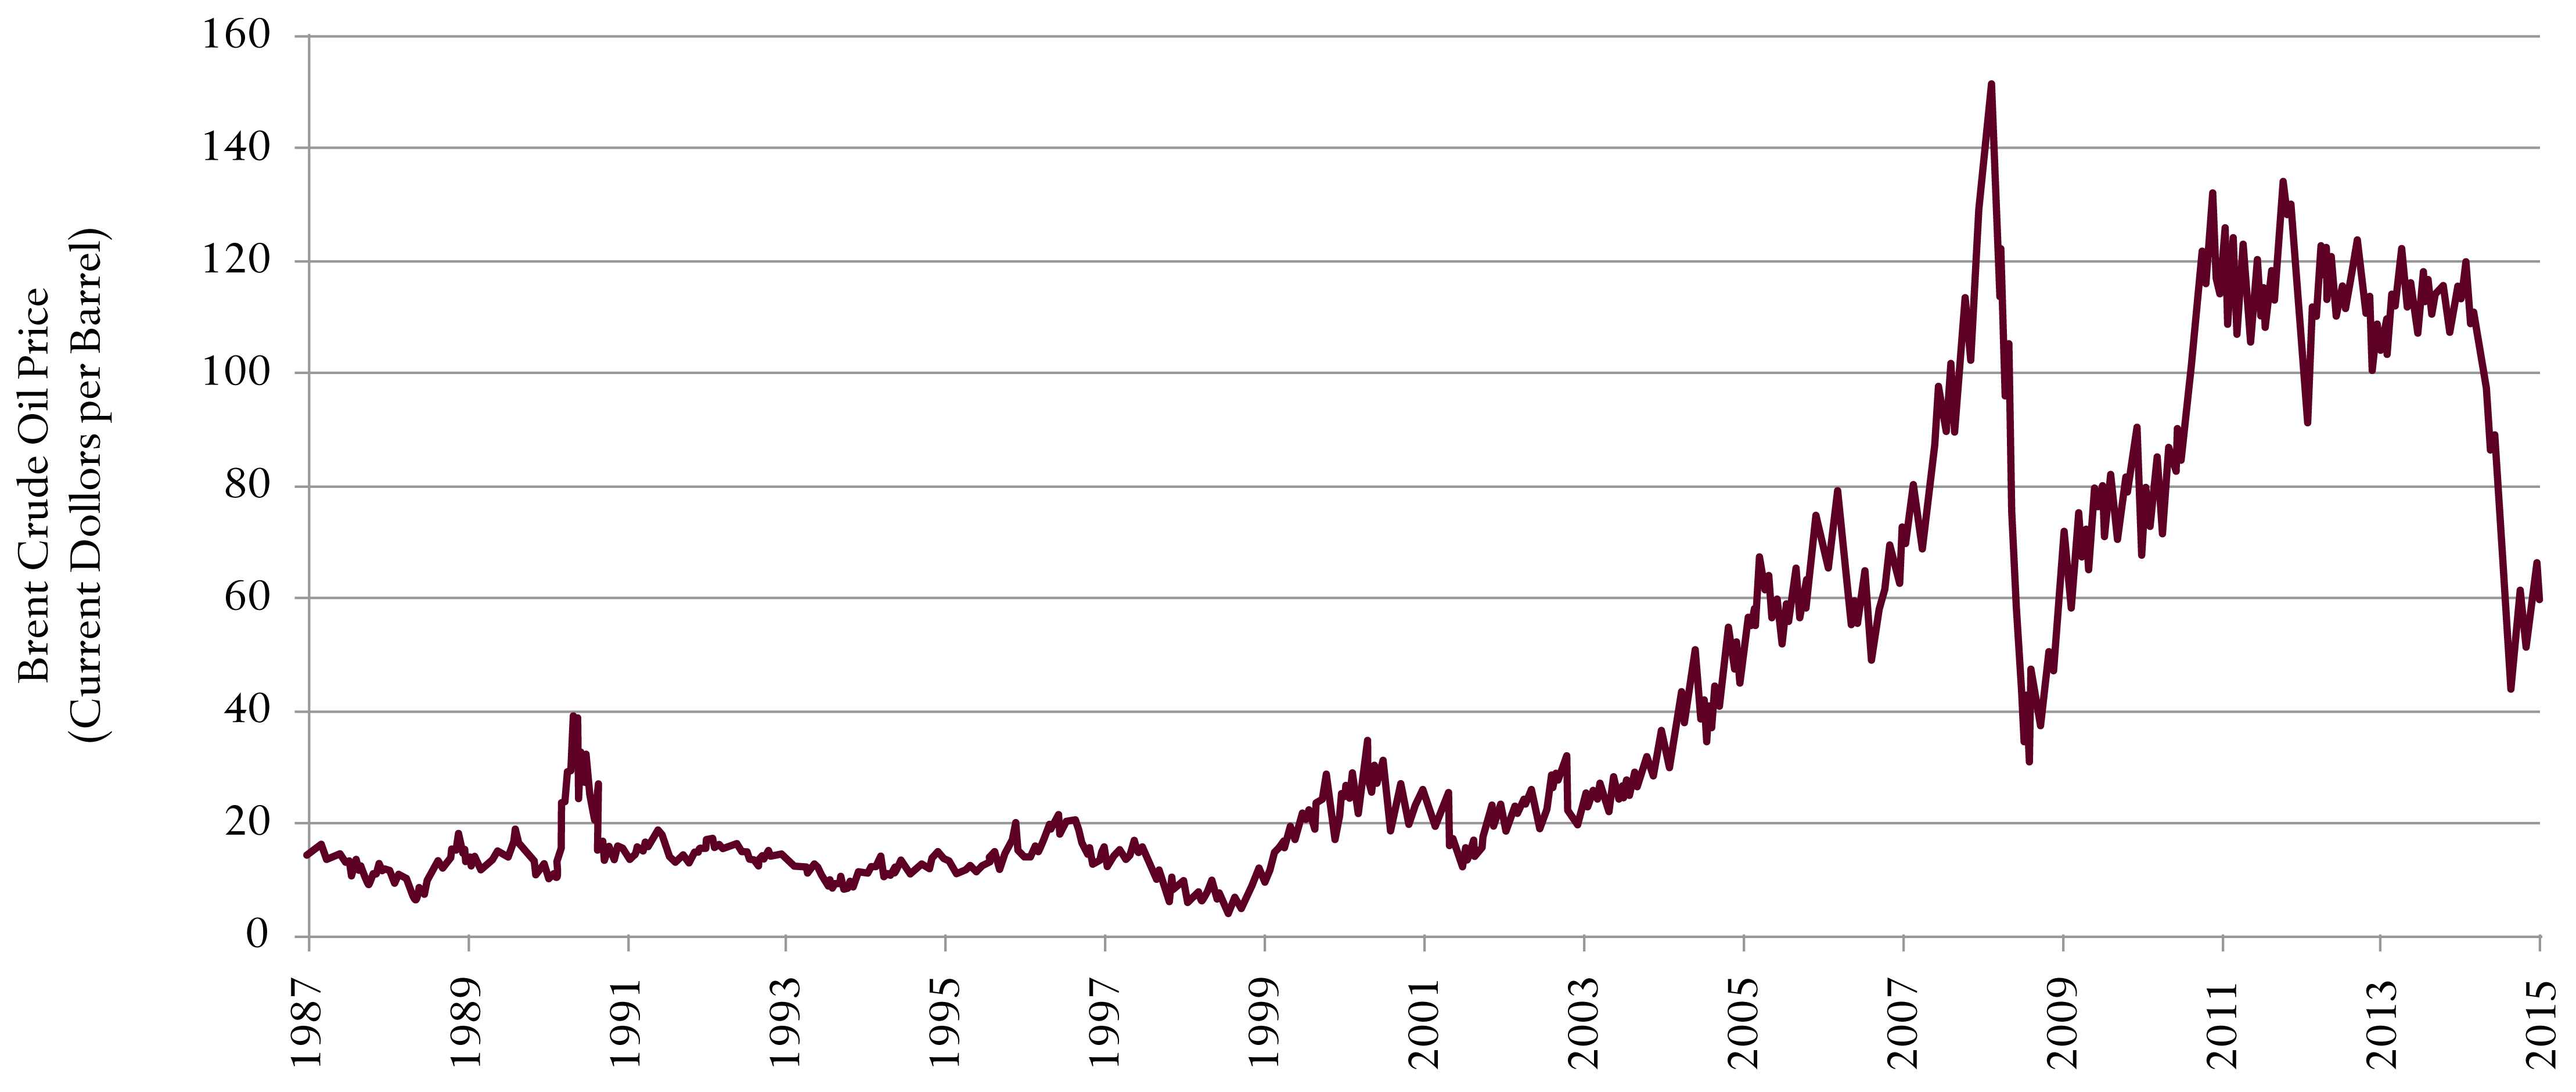 crude oil price marketwatch